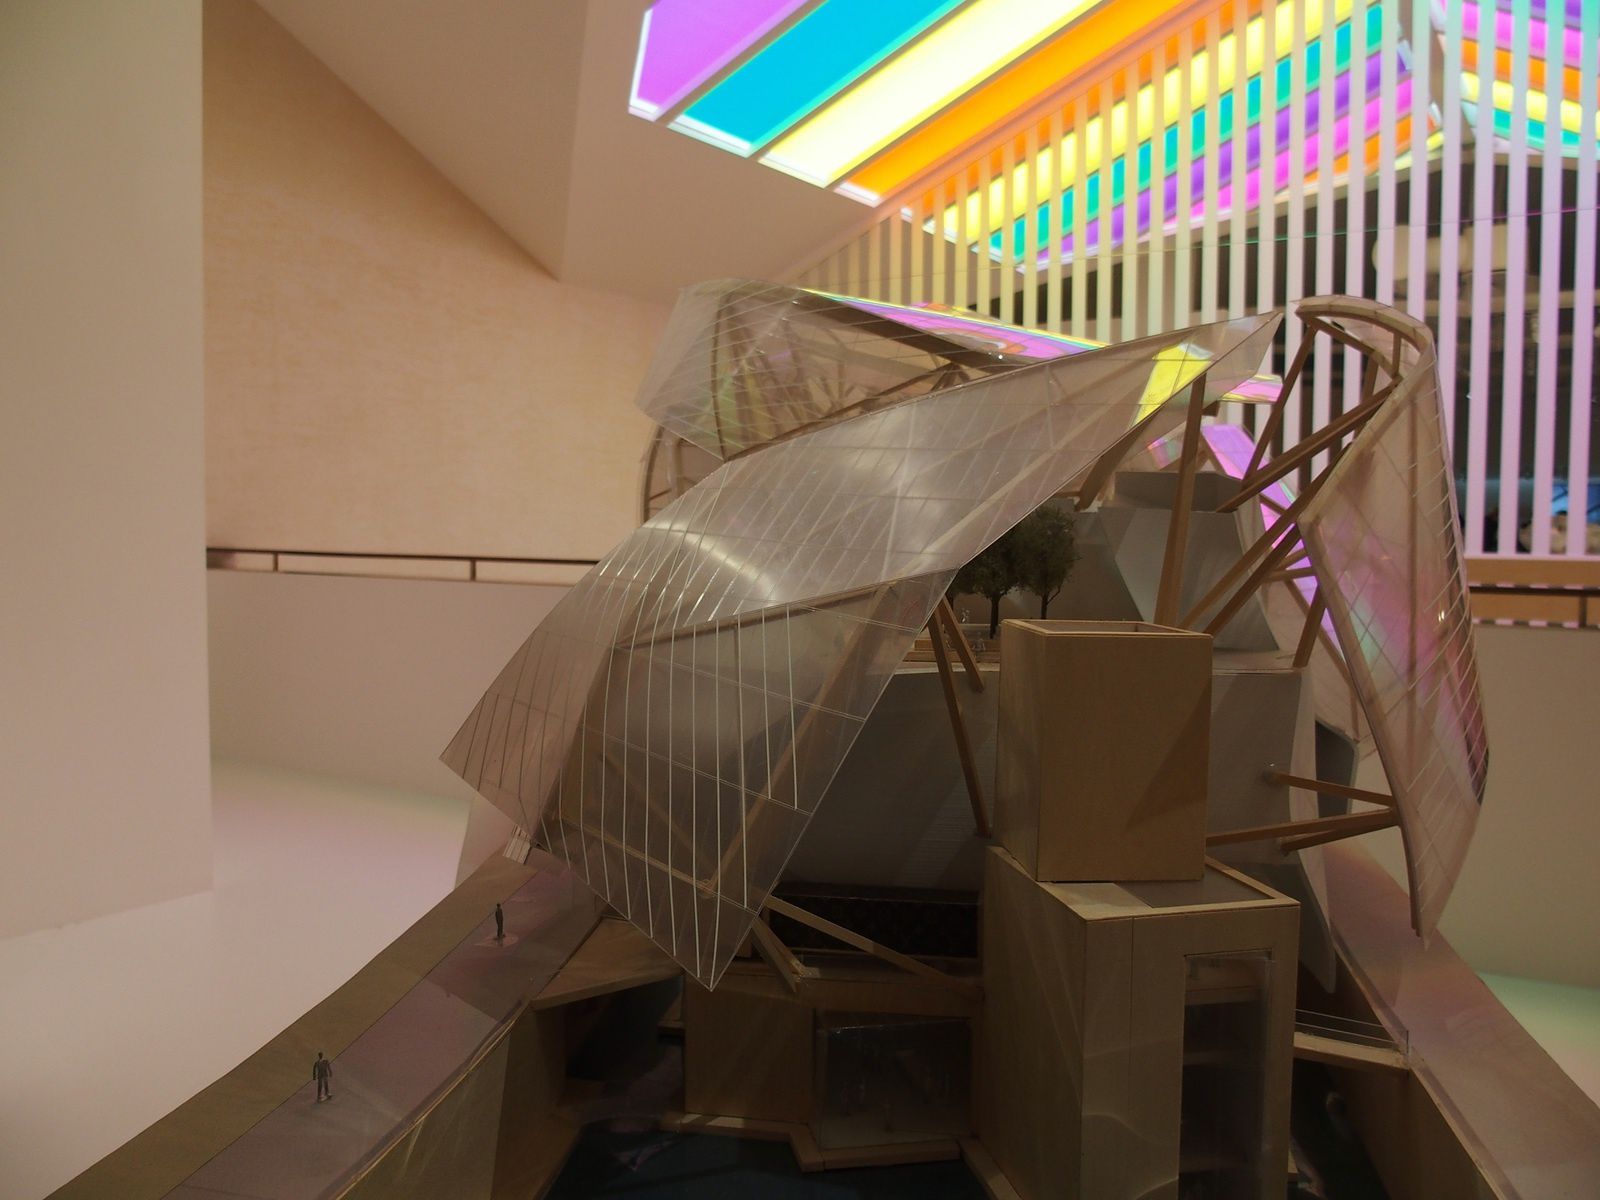 Fondation Louis Vuitton, Building in Paris by Frank Gehry - Con  l'intervento di Daniel Buren